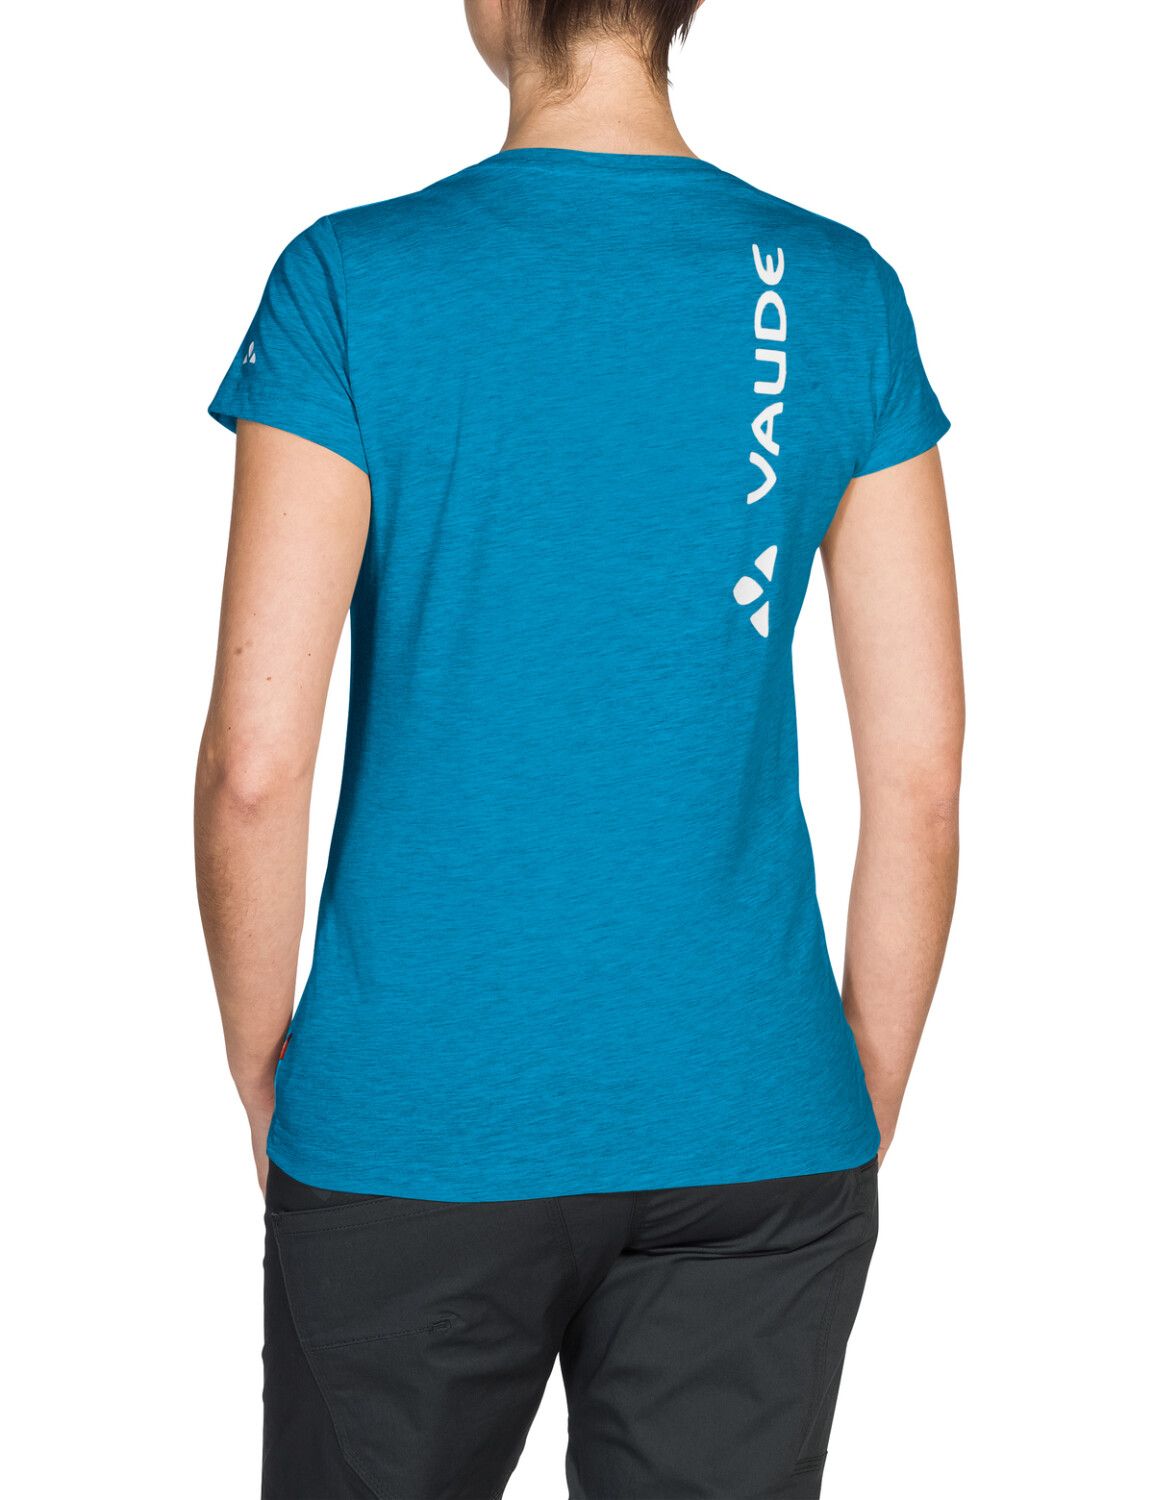 VAUDE Women's Brand Shirt (Bild 17)